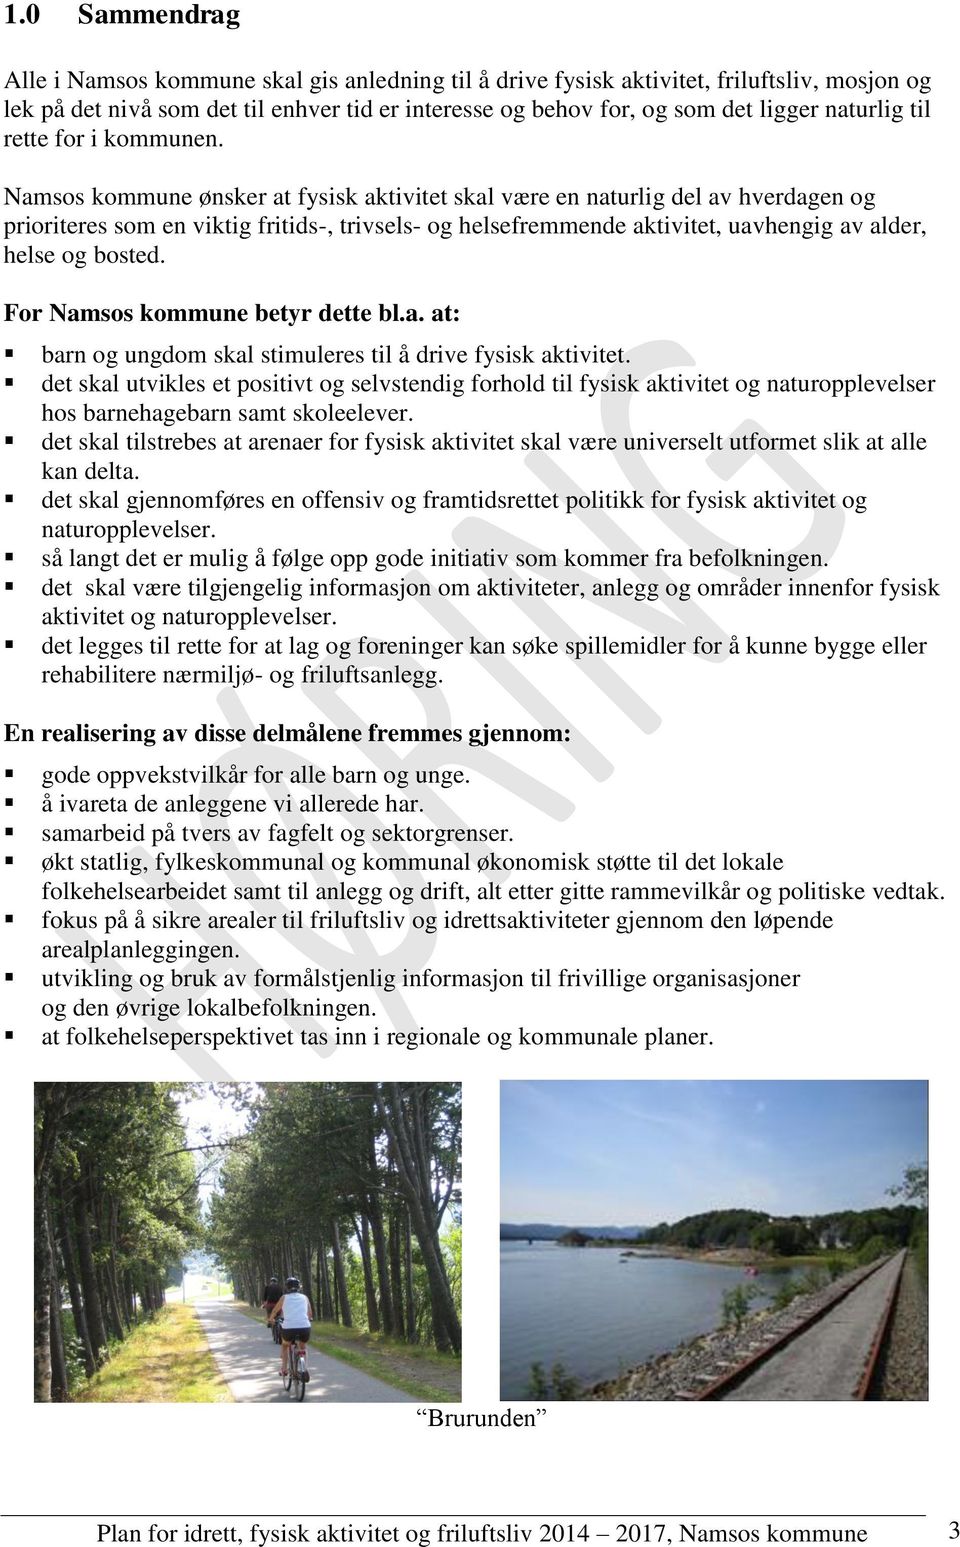 Namsos kommune ønsker at fysisk aktivitet skal være en naturlig del av hverdagen og prioriteres som en viktig fritids-, trivsels- og helsefremmende aktivitet, uavhengig av alder, helse og bosted.